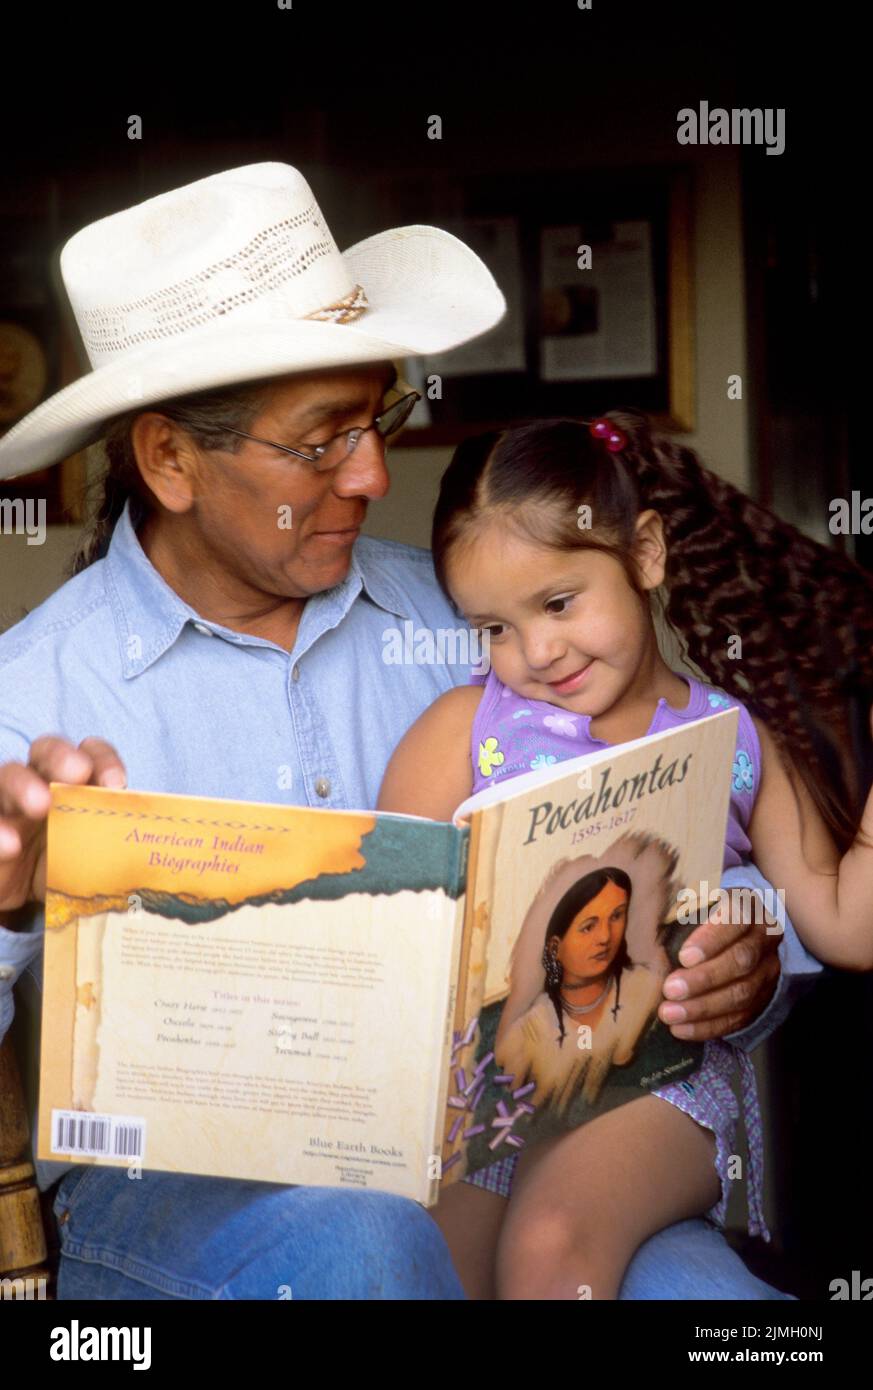 Famille amérindienne d'un grand-père lisant un livre d'histoire sur Pocahontas à sa jeune petite-fille. Banque D'Images